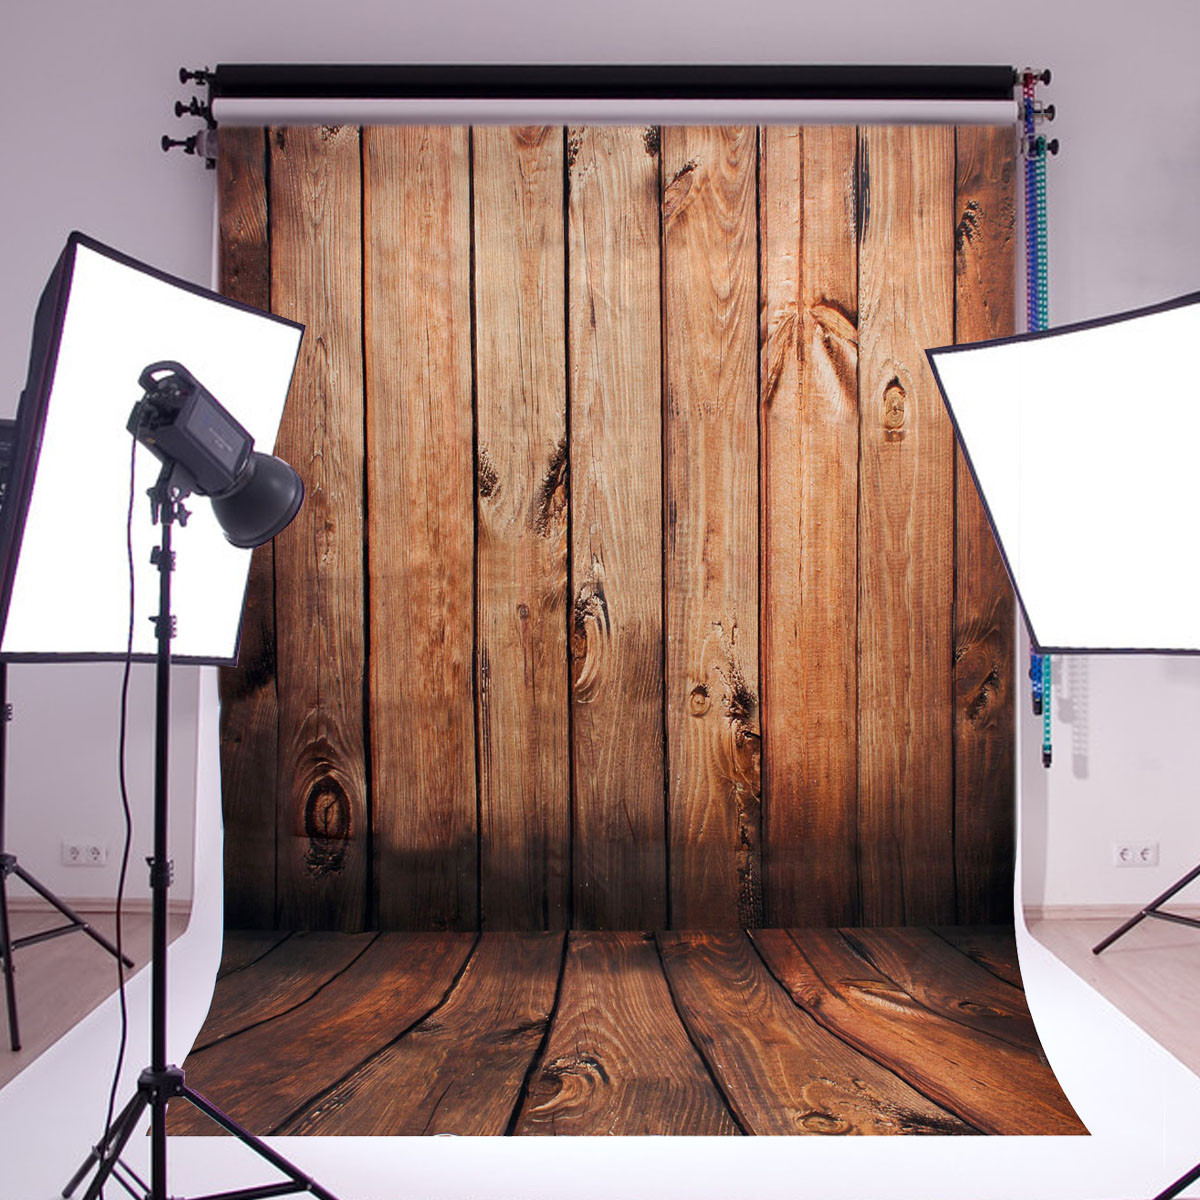 Nếu bạn đang tìm kiếm một mẫu nền ảnh phòng chụp của riêng mình thì hãy xem ngay video của chúng tôi. Hình ảnh về nền đồ gỗ trang trí tường và sàn nhà sẽ mang đến cho bạn không gian đẹp và ấn tượng cho bất kì món đồ nào của bạn.